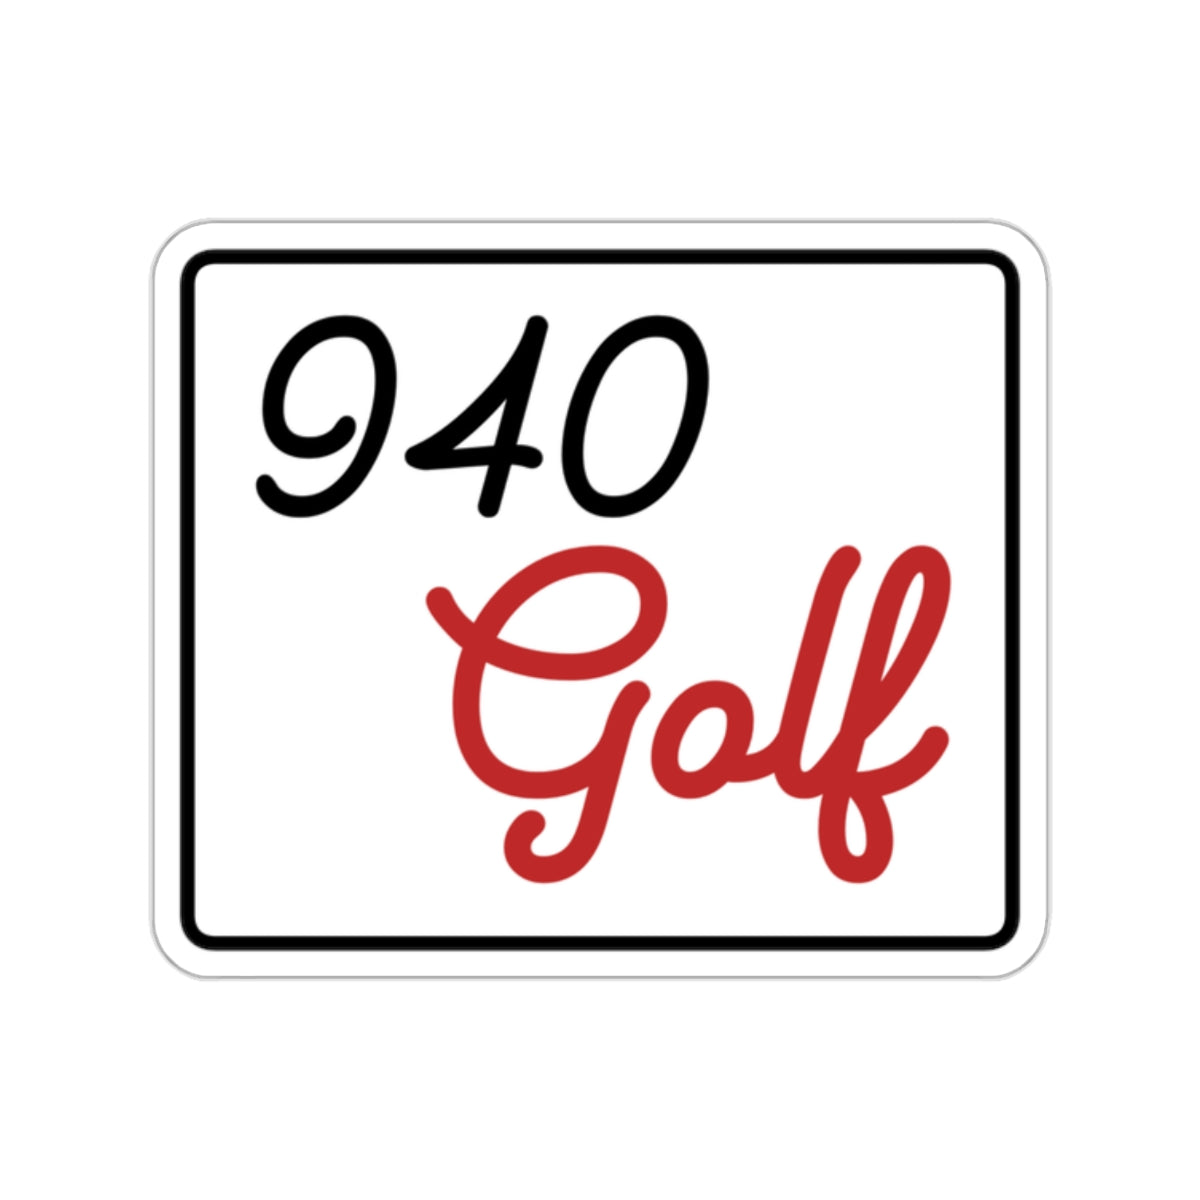 940 pegatinas troqueladas de golf